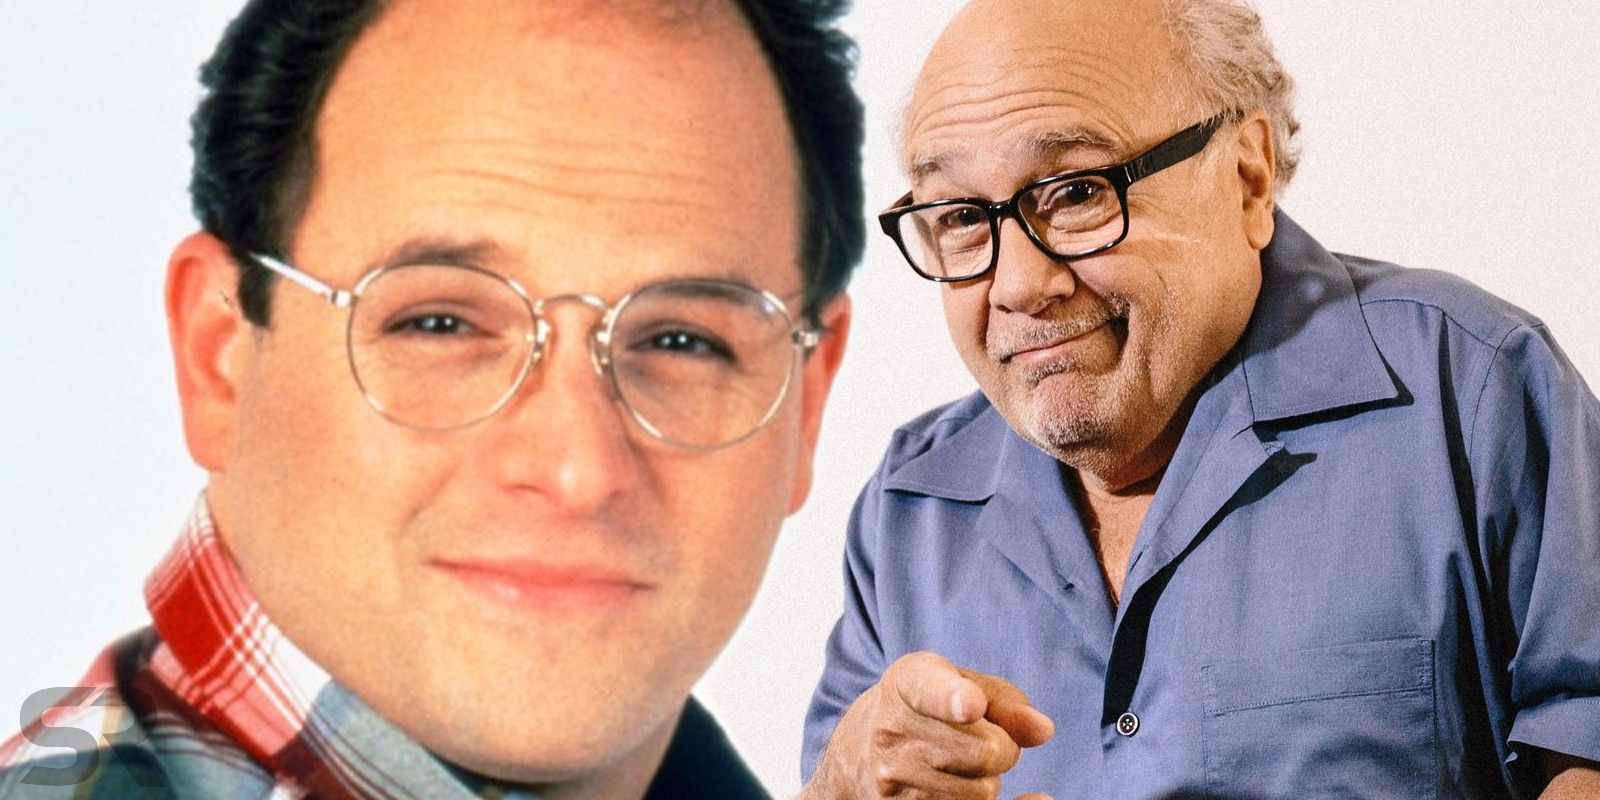 Seinfeld-George-Costanza-Danny-DeVito-SR.jpg